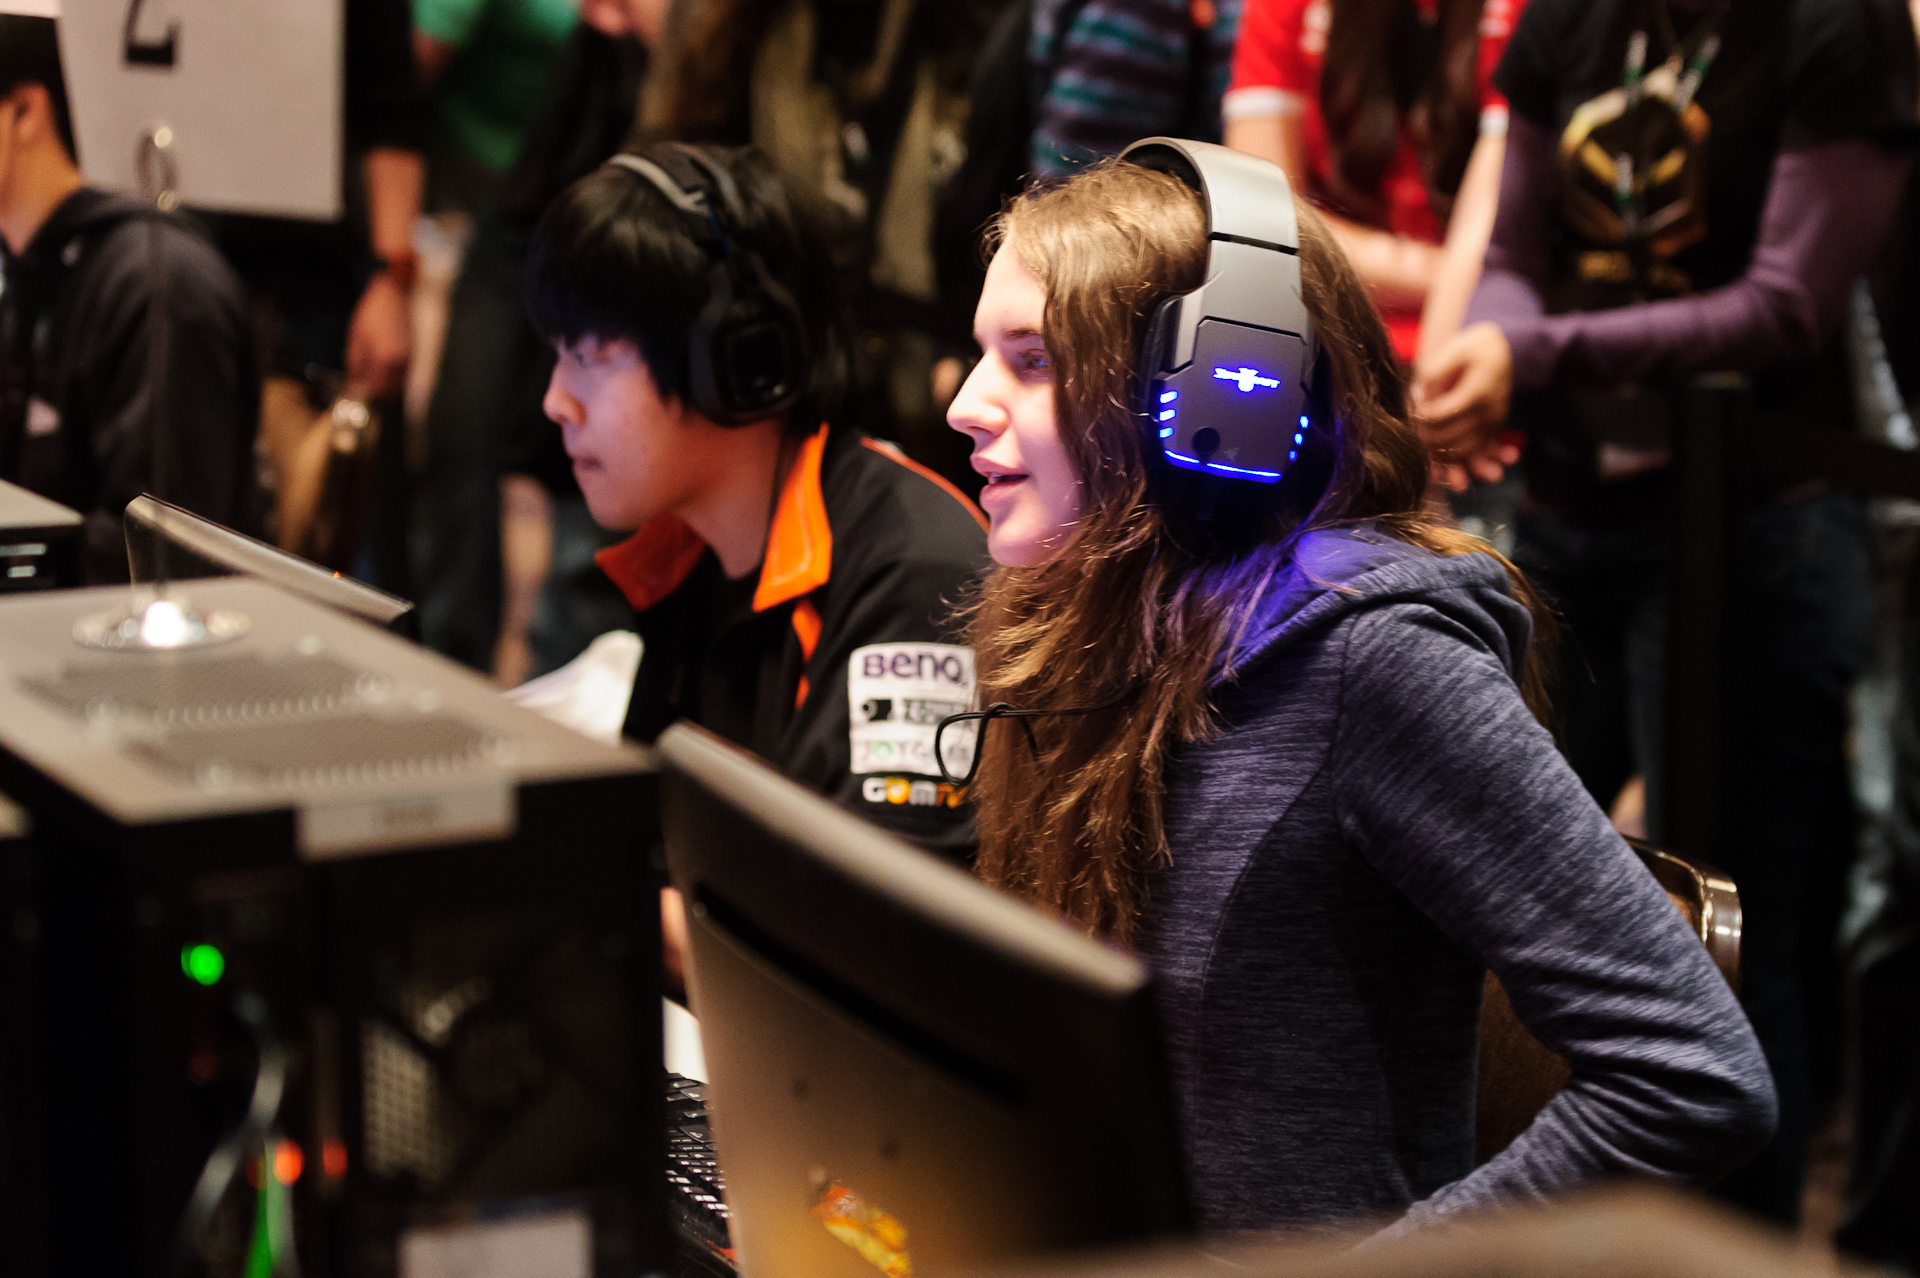 Garota canadense disputa prêmio de US$ 40 mil com coreanos em torneio de StarCraft II